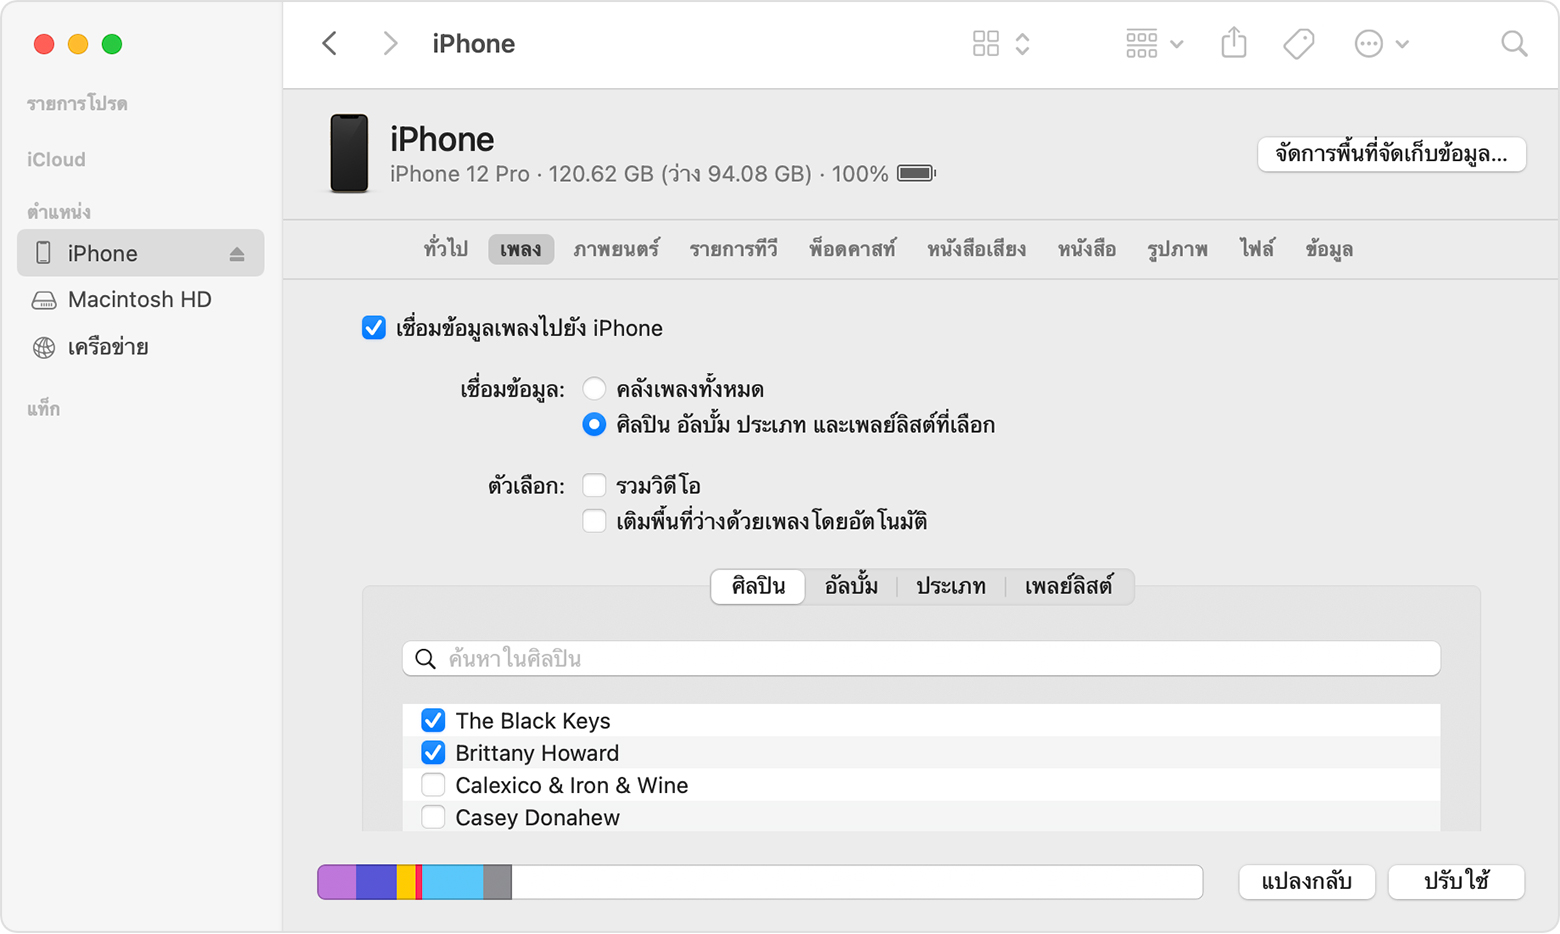 หน้าต่างของ Finder จะแสดงตัวเลือกต่างๆ สำหรับซิงค์เพลงกับ iPhone ที่เชื่อมต่อ